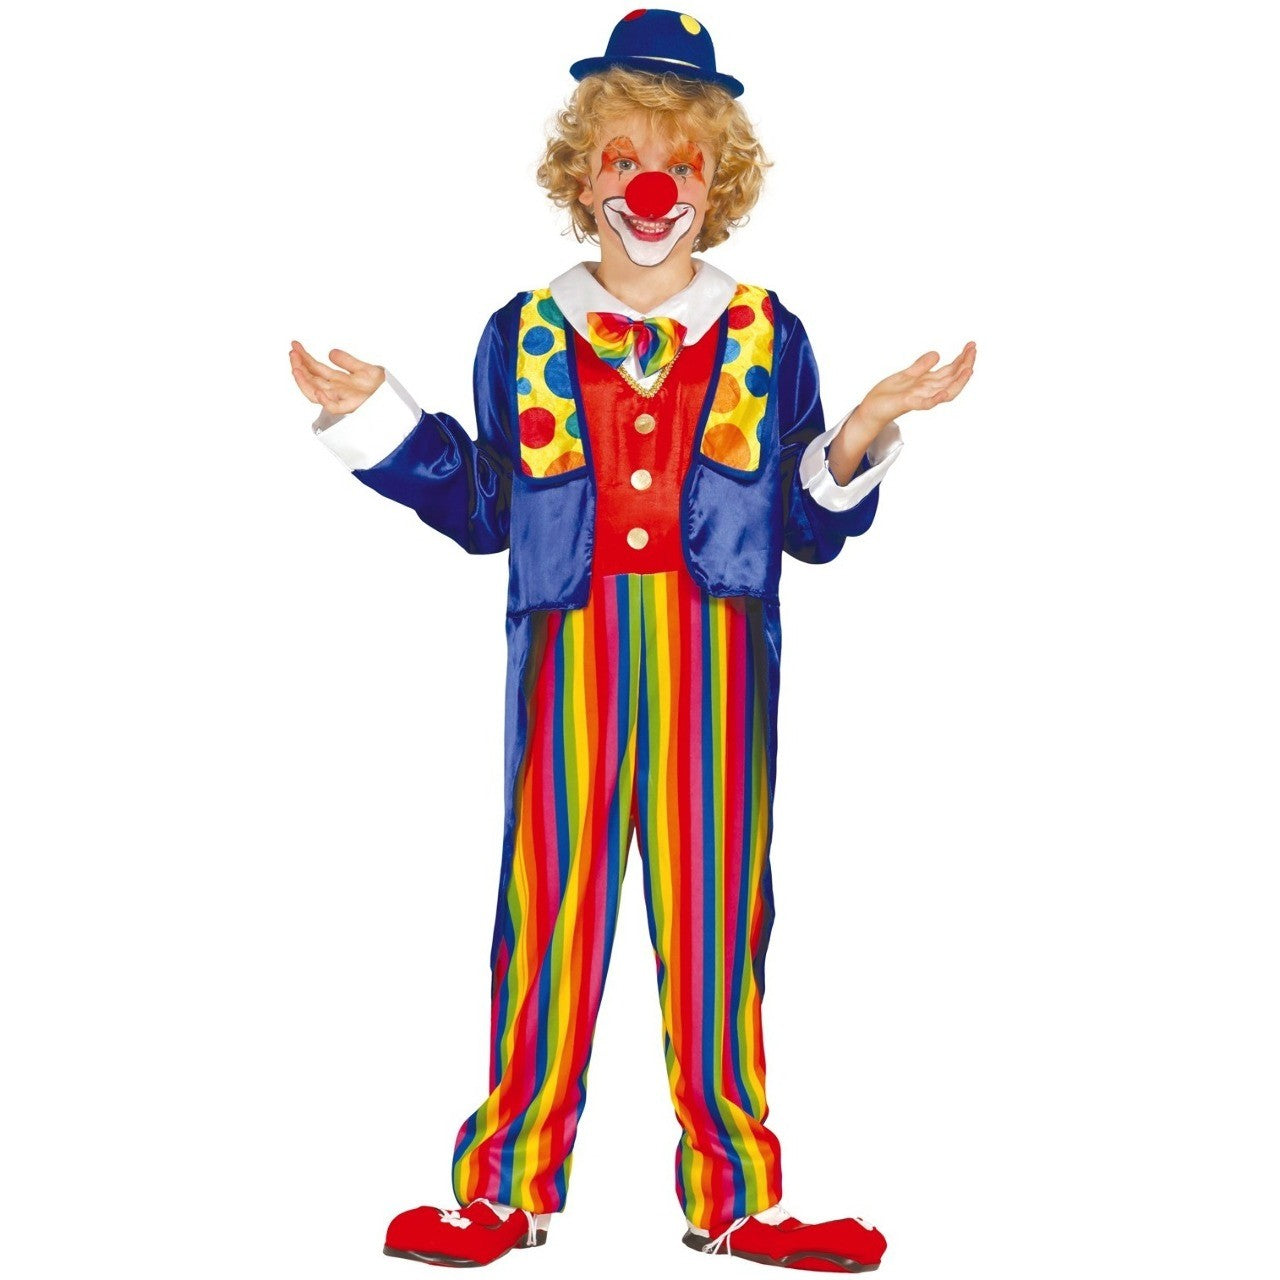 Acquista online il costume da Clown Smile per bambino